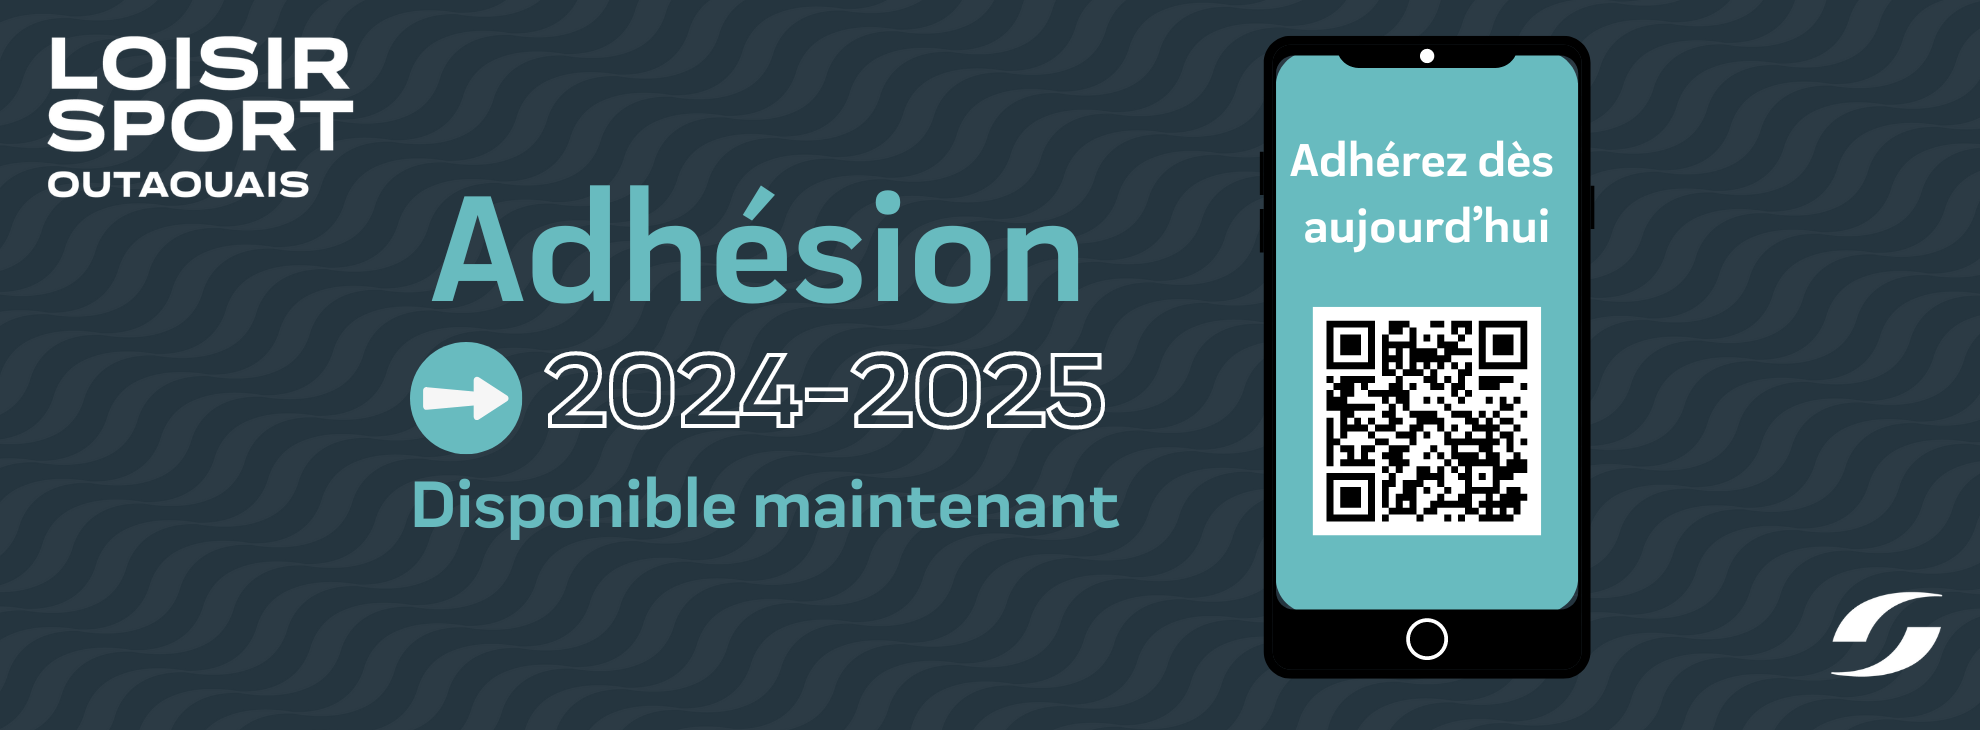 APPEL À L’ACTION : Renouvelez votre adhésion pour l’année 2024-2025